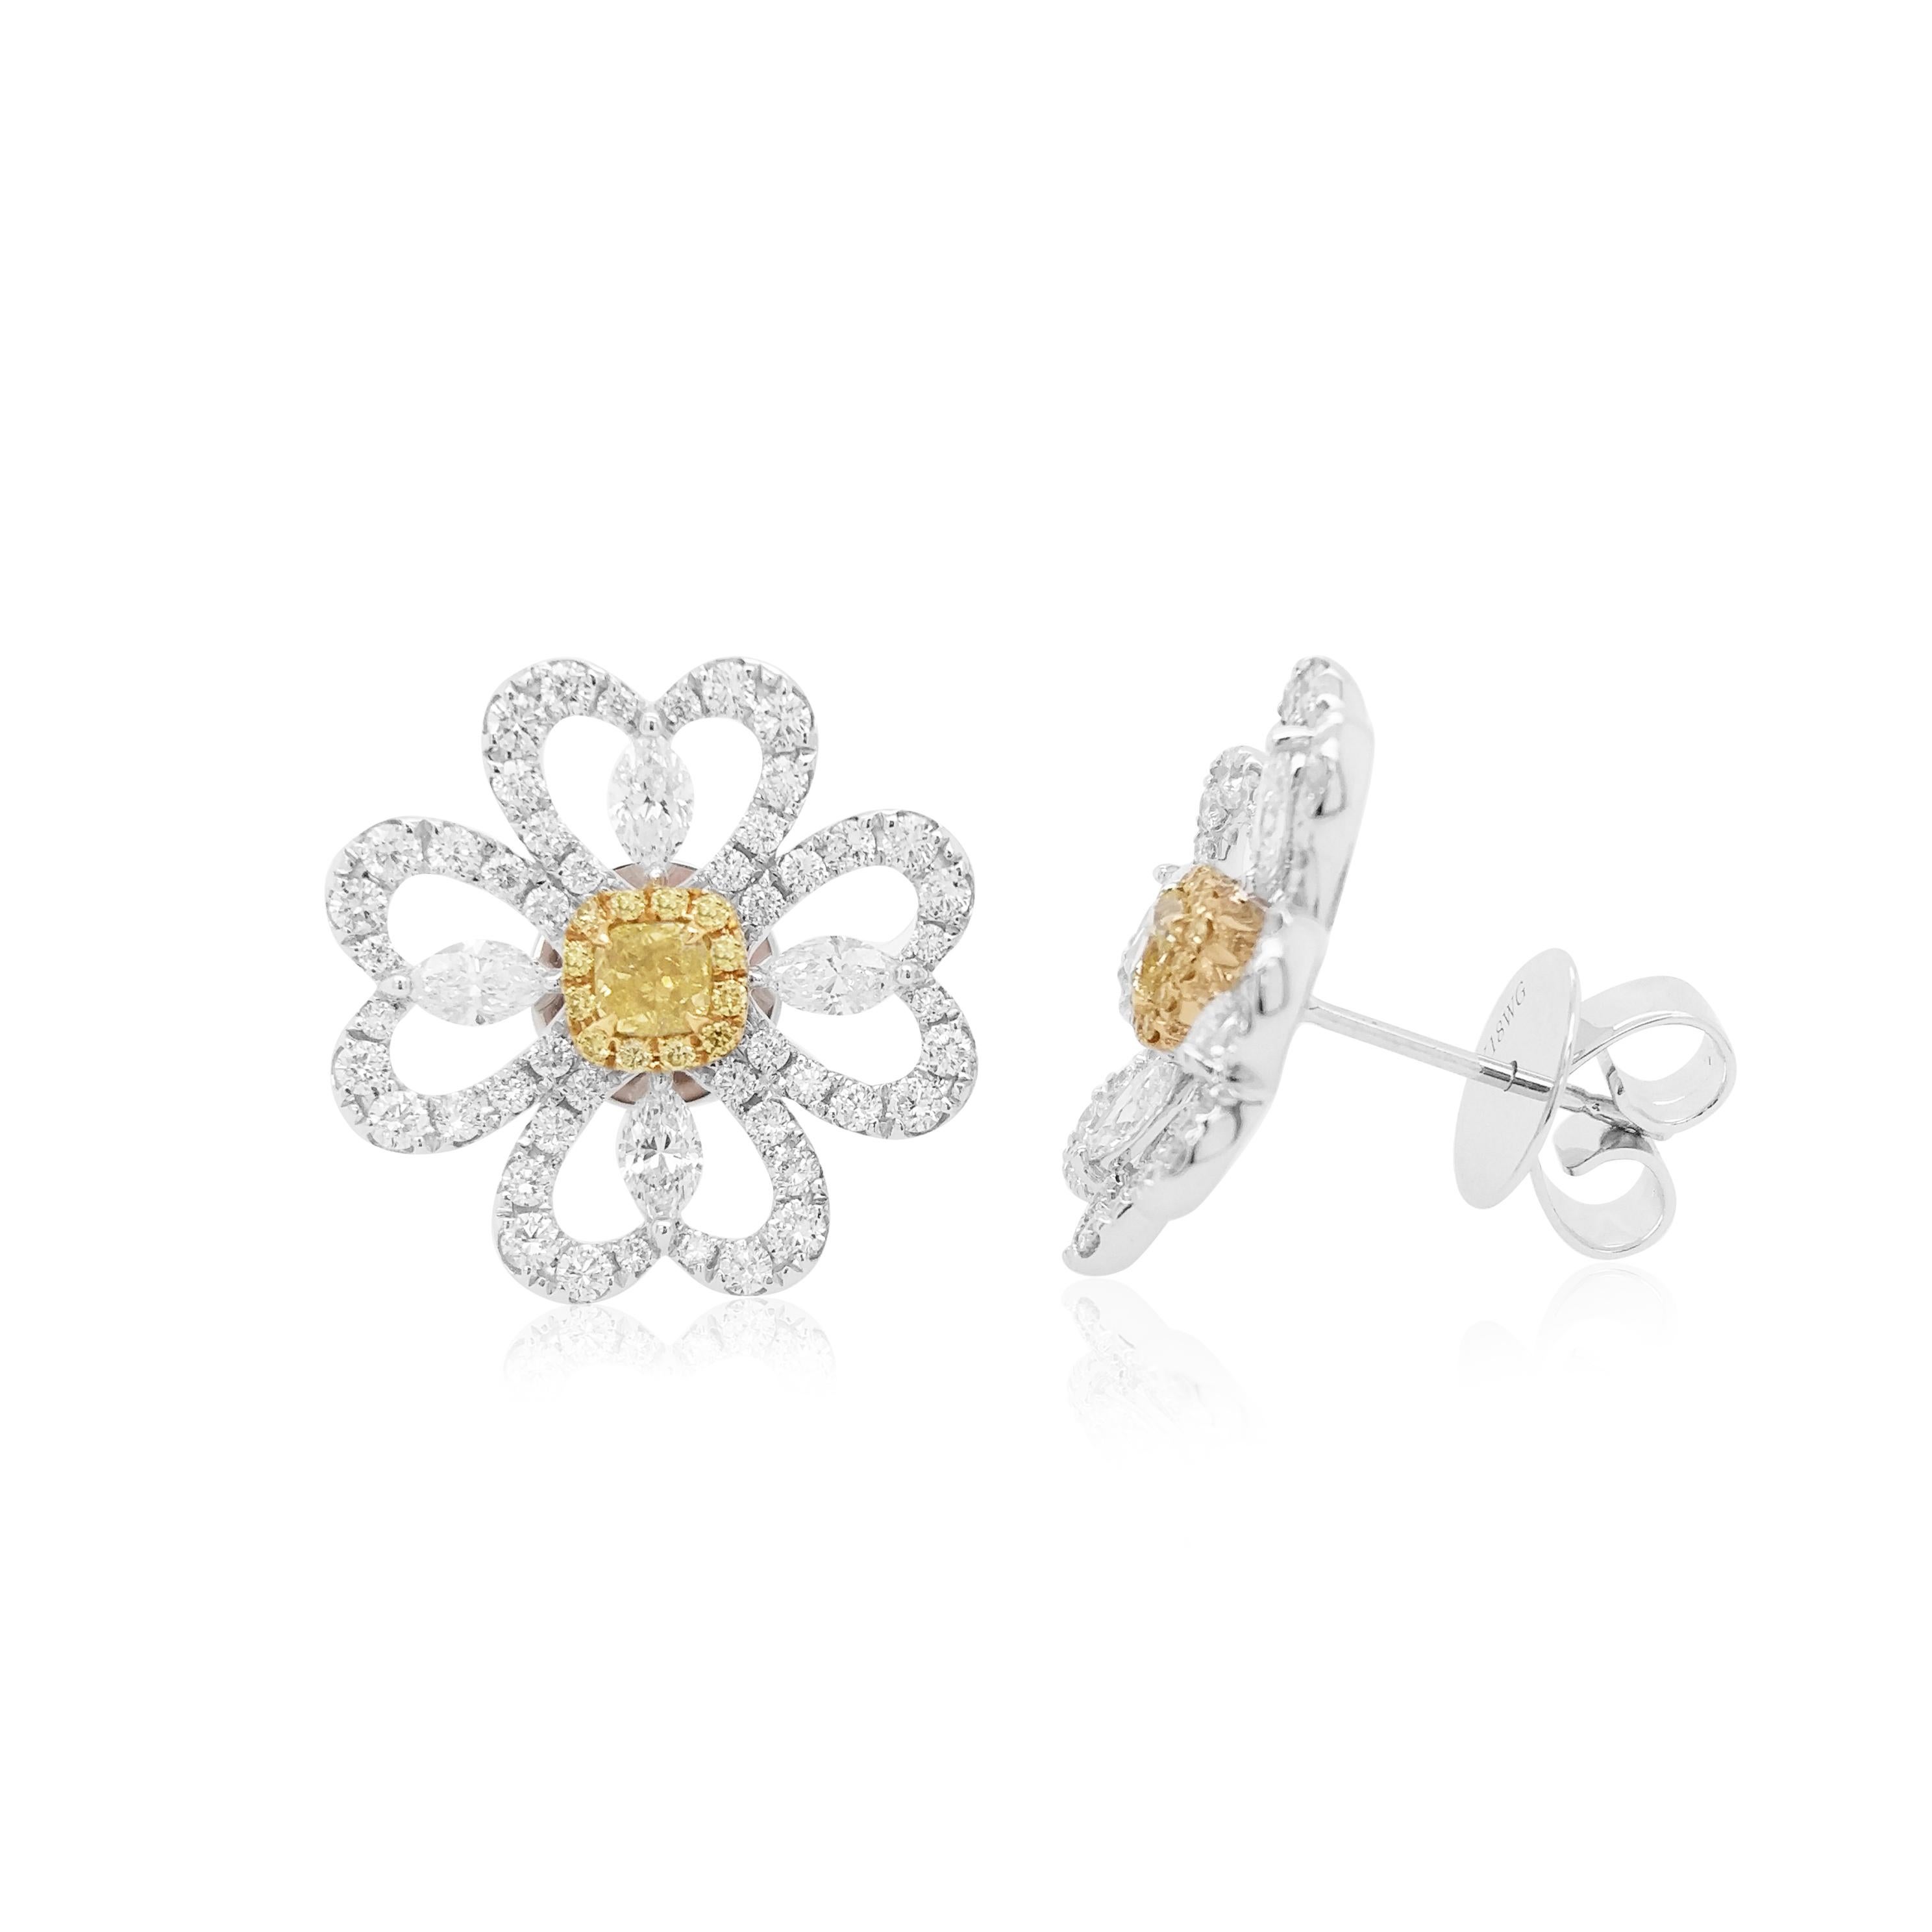 Im Mittelpunkt dieser einzigartigen blumenförmigen Ohrringe stehen natürliche gelbe Diamanten in Kissenform. Die satte Farbe dieser Diamanten wird durch das zarte Blumenmuster aus 18 Karat Weißgold, das durch eine Kombination aus weißen Diamanten im